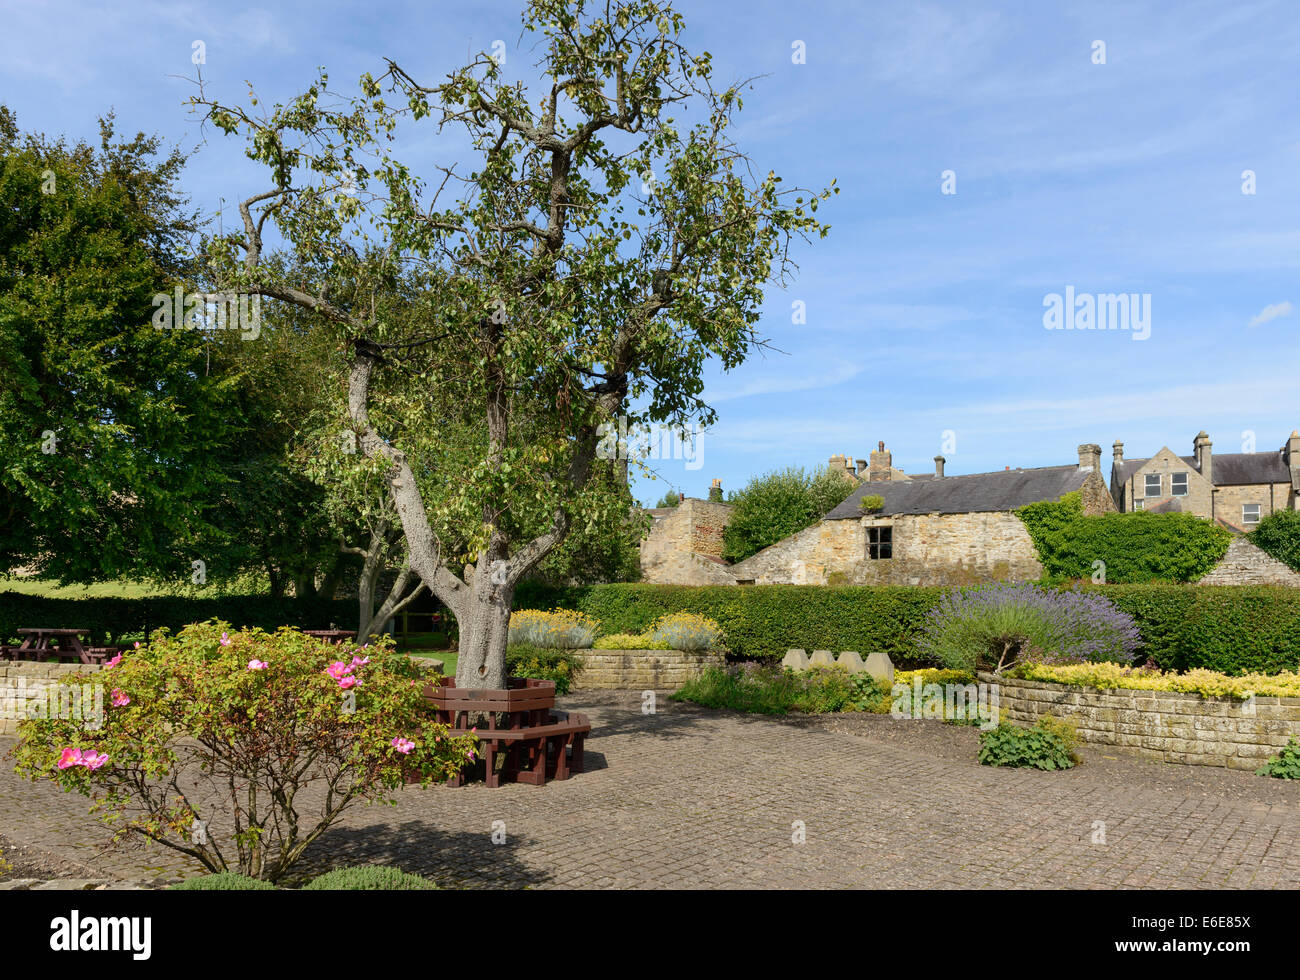 The Sensory Garden at Barnard Castle Stock Photo